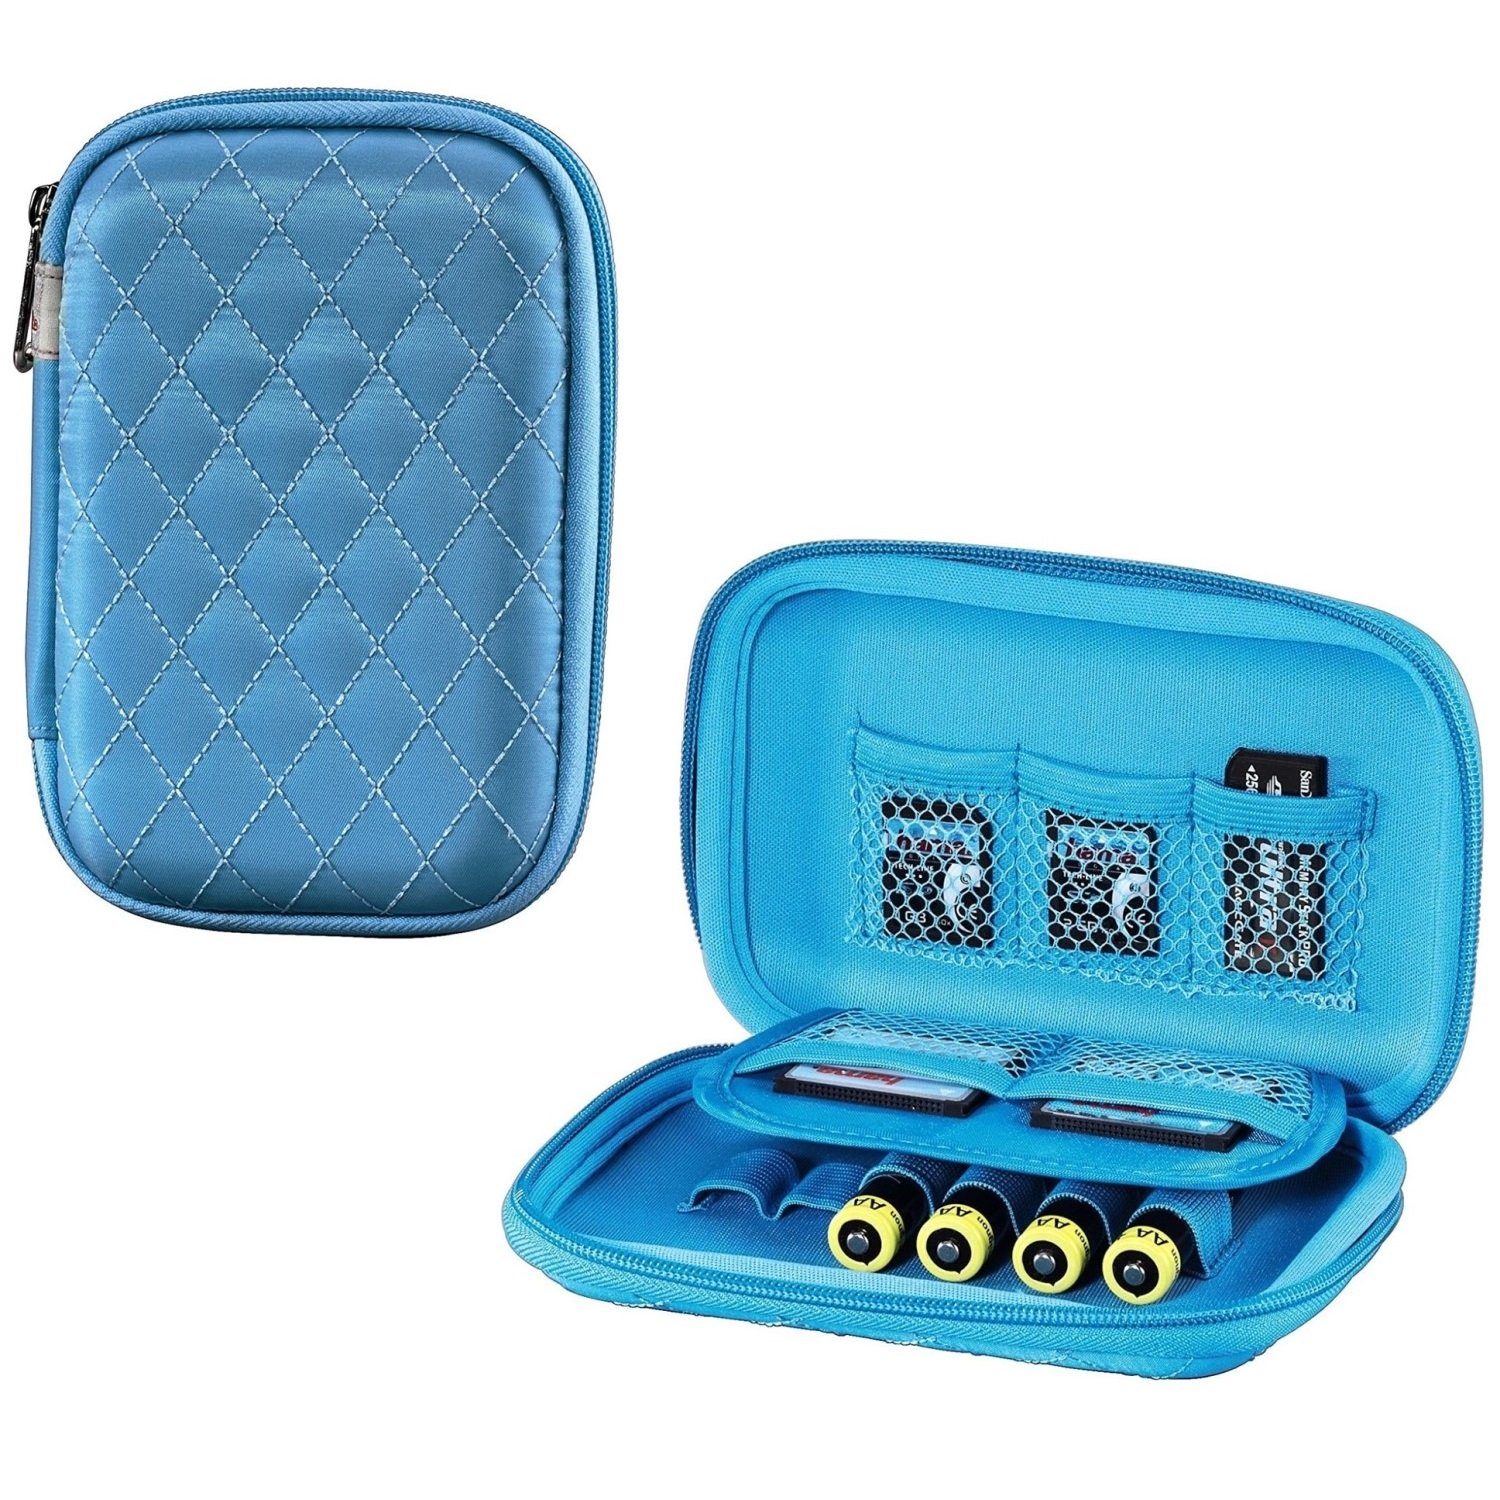 Hama Etui Speicherkarten-Tasche Case Etui Bahia Blau, Etui für 8x SD SDHC MMC xD CF MS Karte, USB-Sticks und 6x Batterien